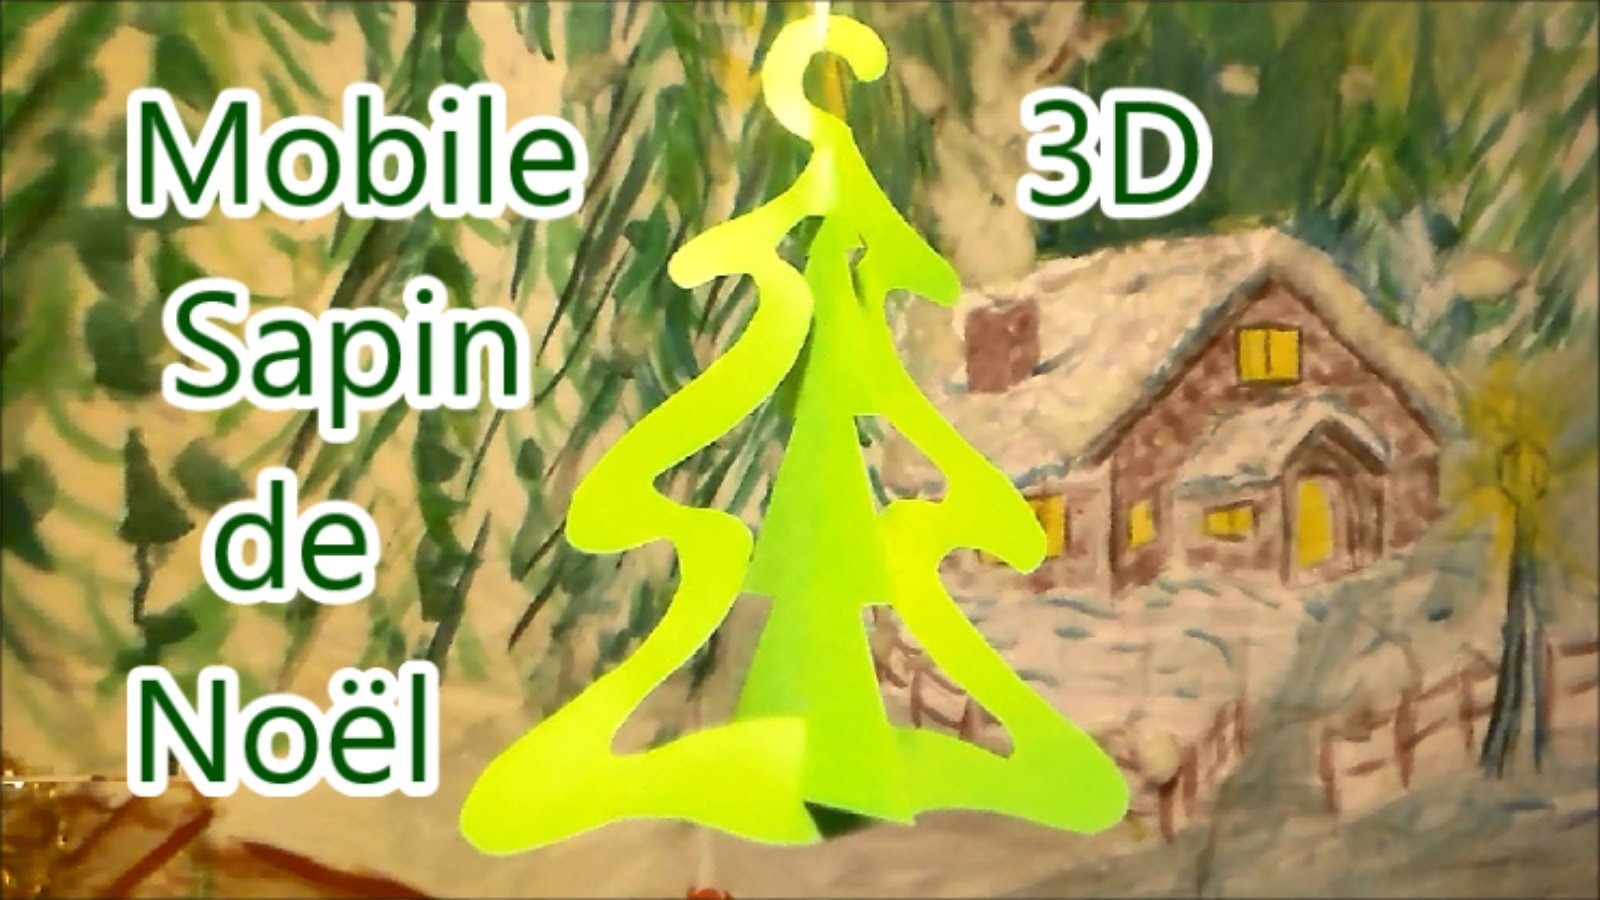 Les diy de Noël : Mobile 3D facile à faire d’un sapin de Noël